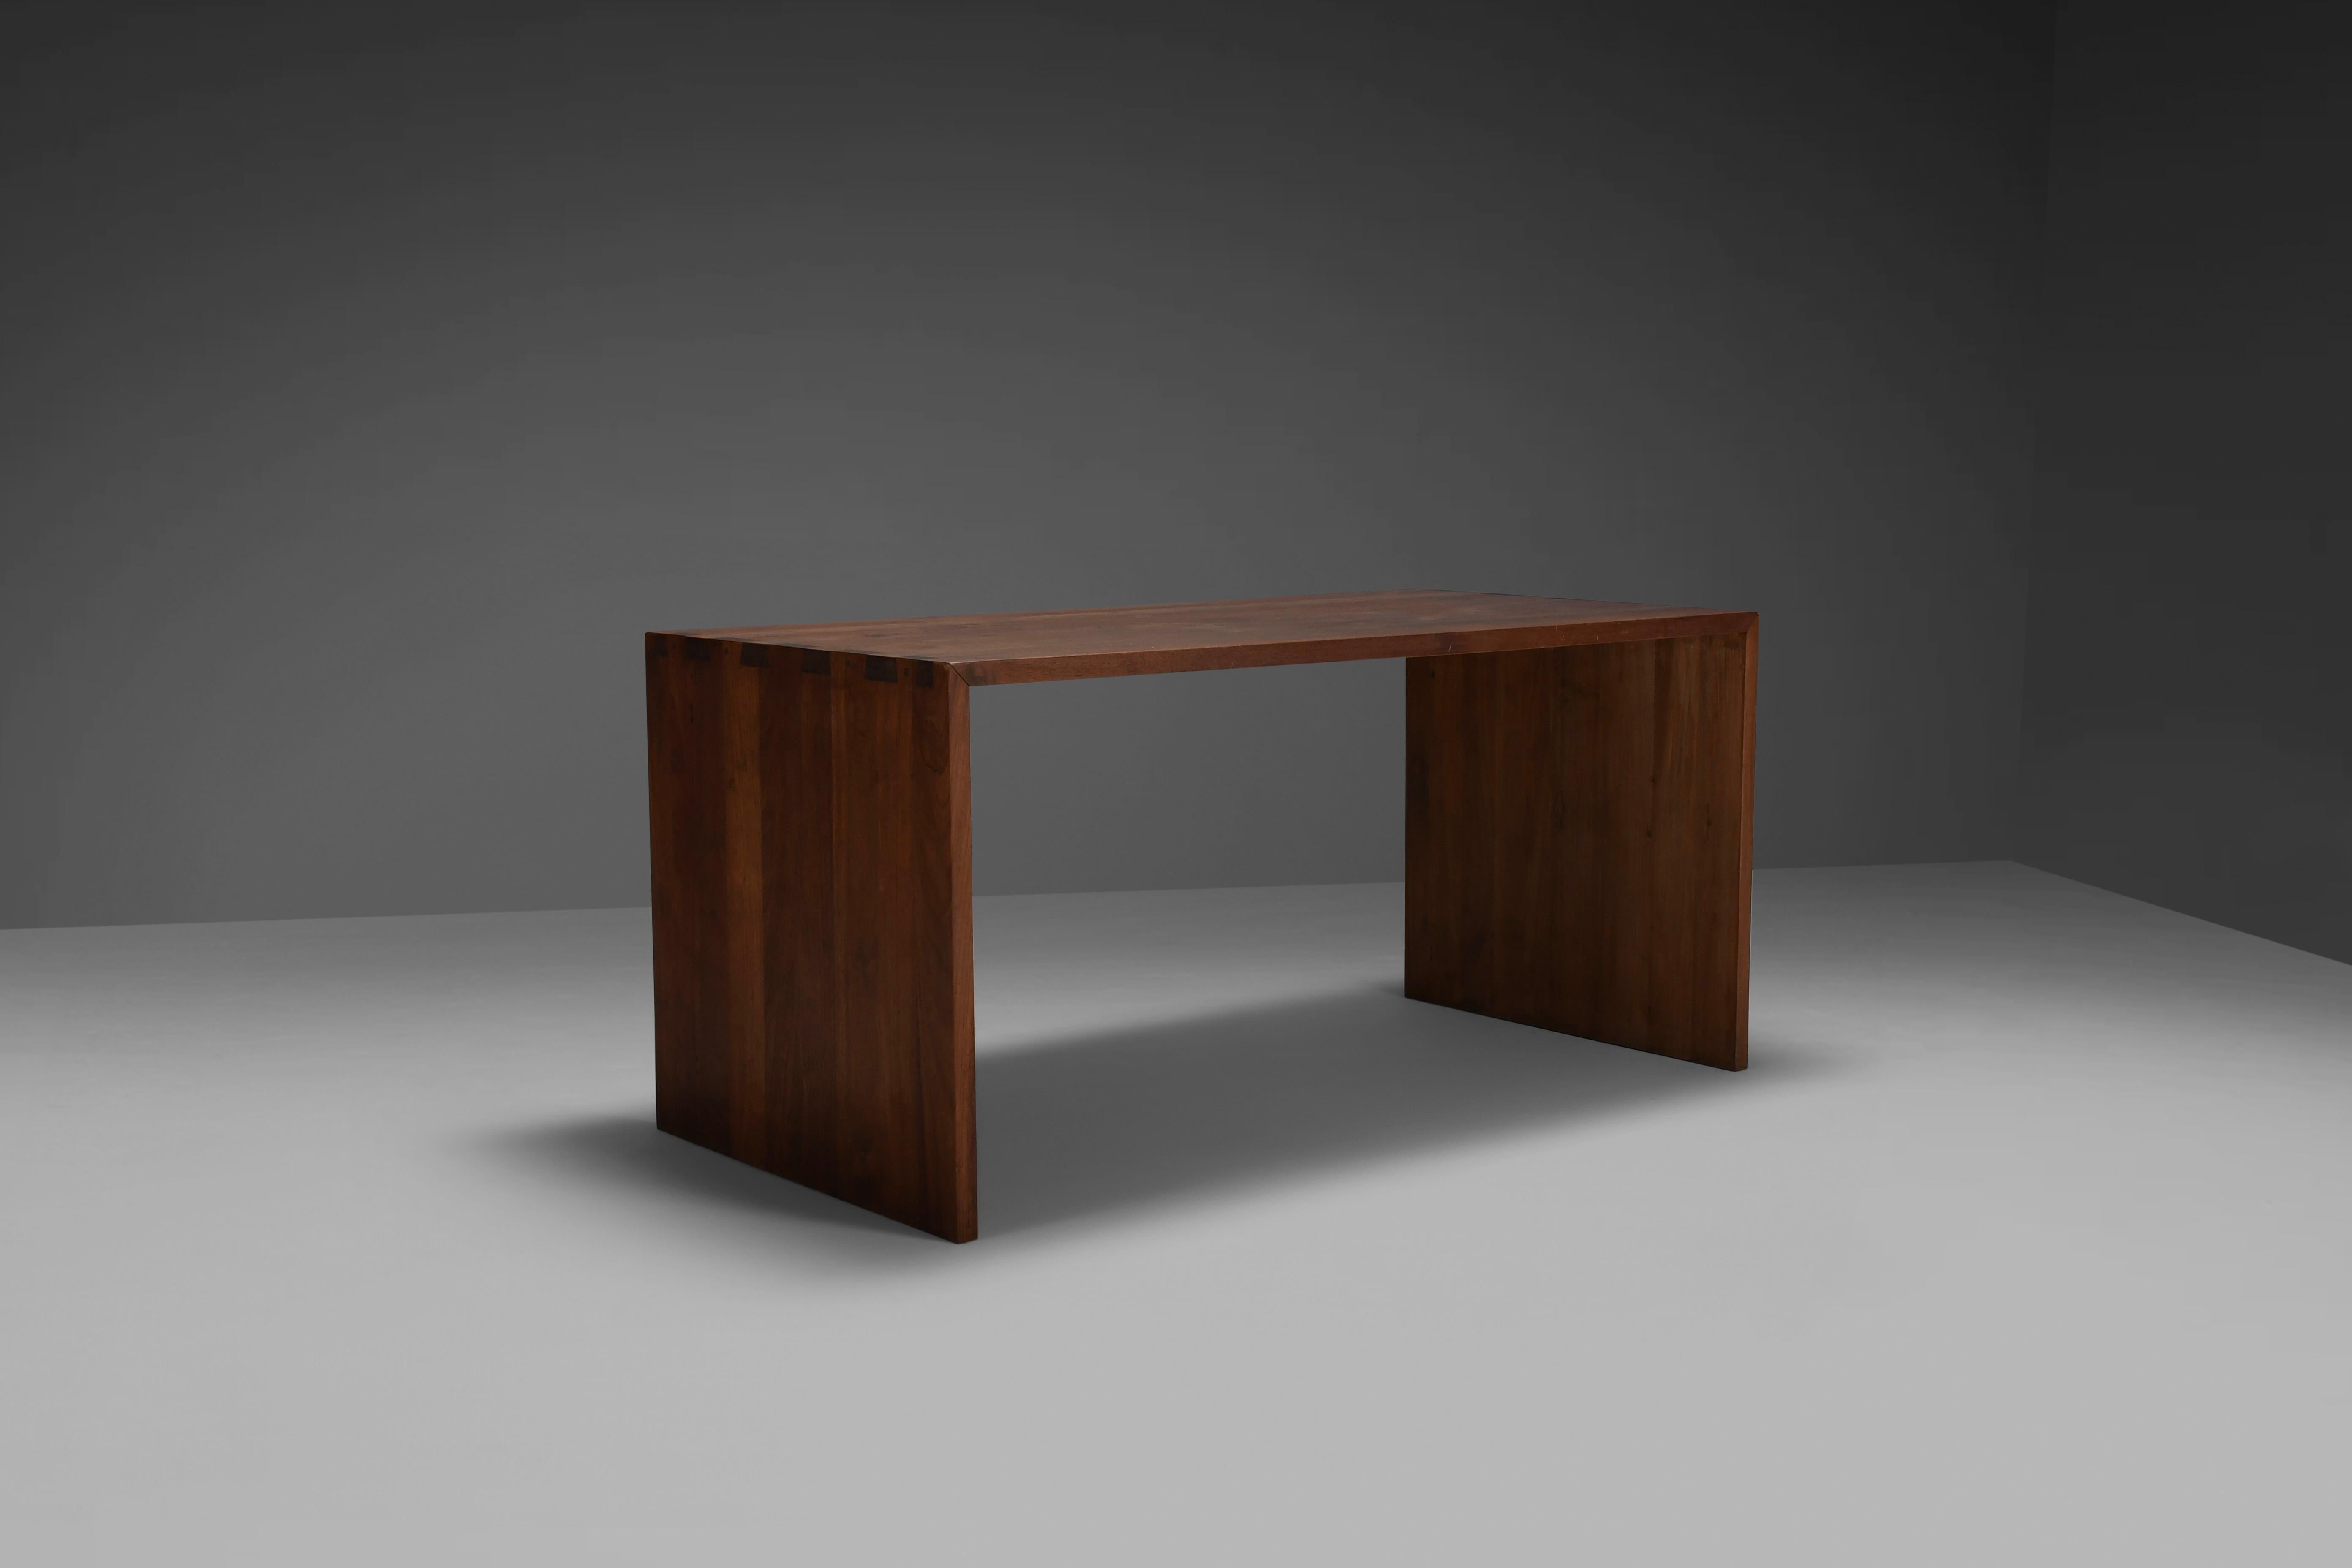 Rustikaler Schreibtisch / Tisch in sehr gutem Originalzustand.

Dieser Schreibtisch / Tisch ist aus rustikalem massivem Teakholz gefertigt, das eine atemberaubende Holzmaserung und Patina aufweist.

Die Seiten sind mit schönen Fugen mit der Decke